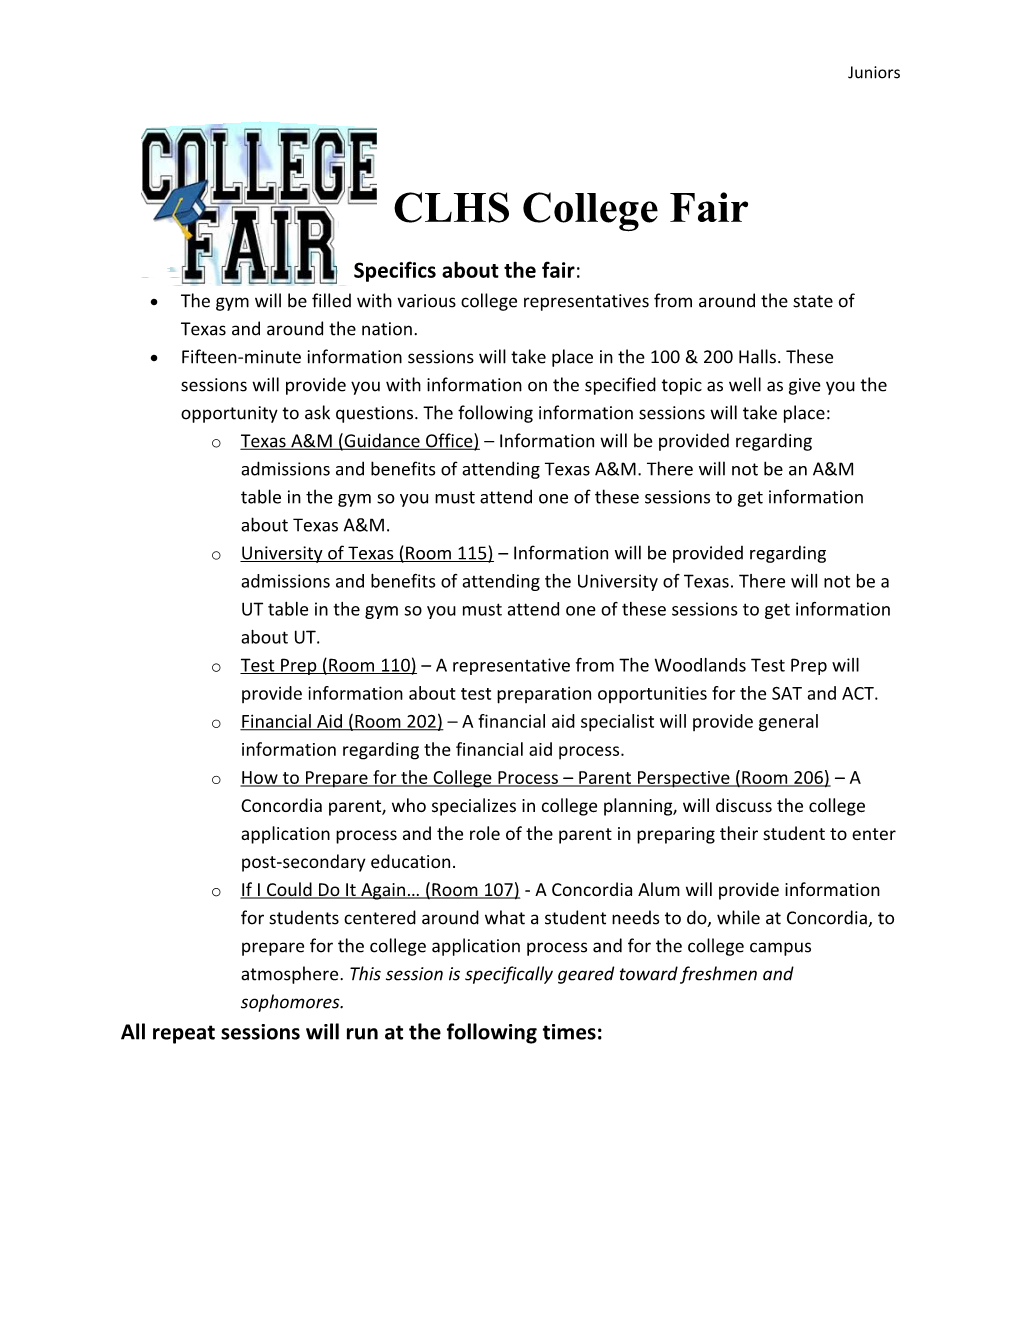 CLHS College Fair